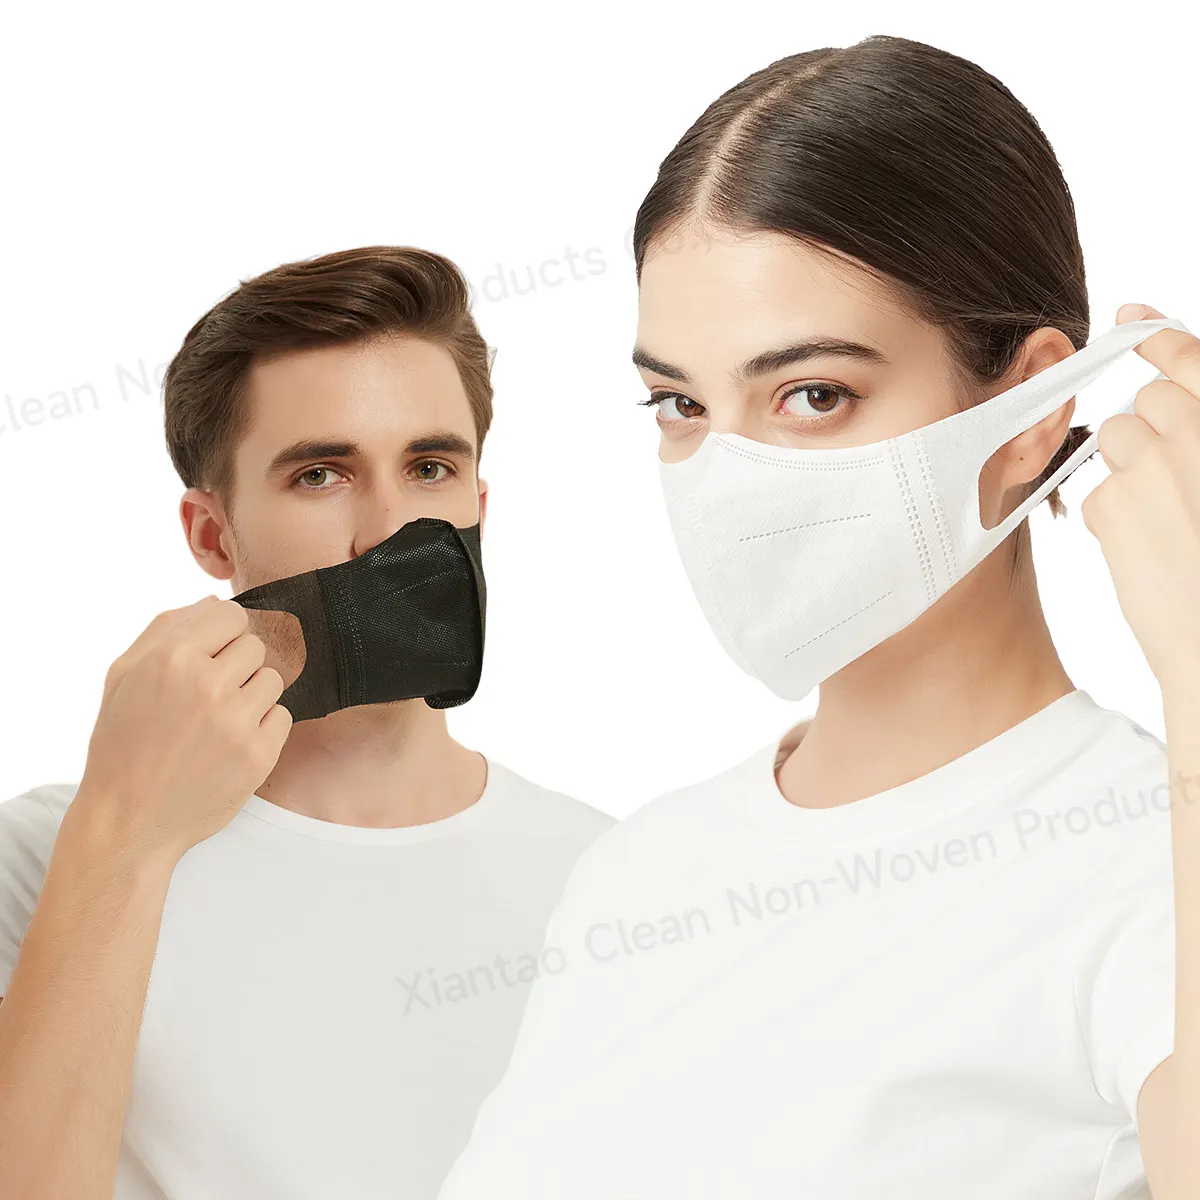 Маска для лица, Удобная 3D однотонная хлопковая моющаяся многоразовая маска для лица против пыли, ткань для лица, Спортивная маска для лица с носом